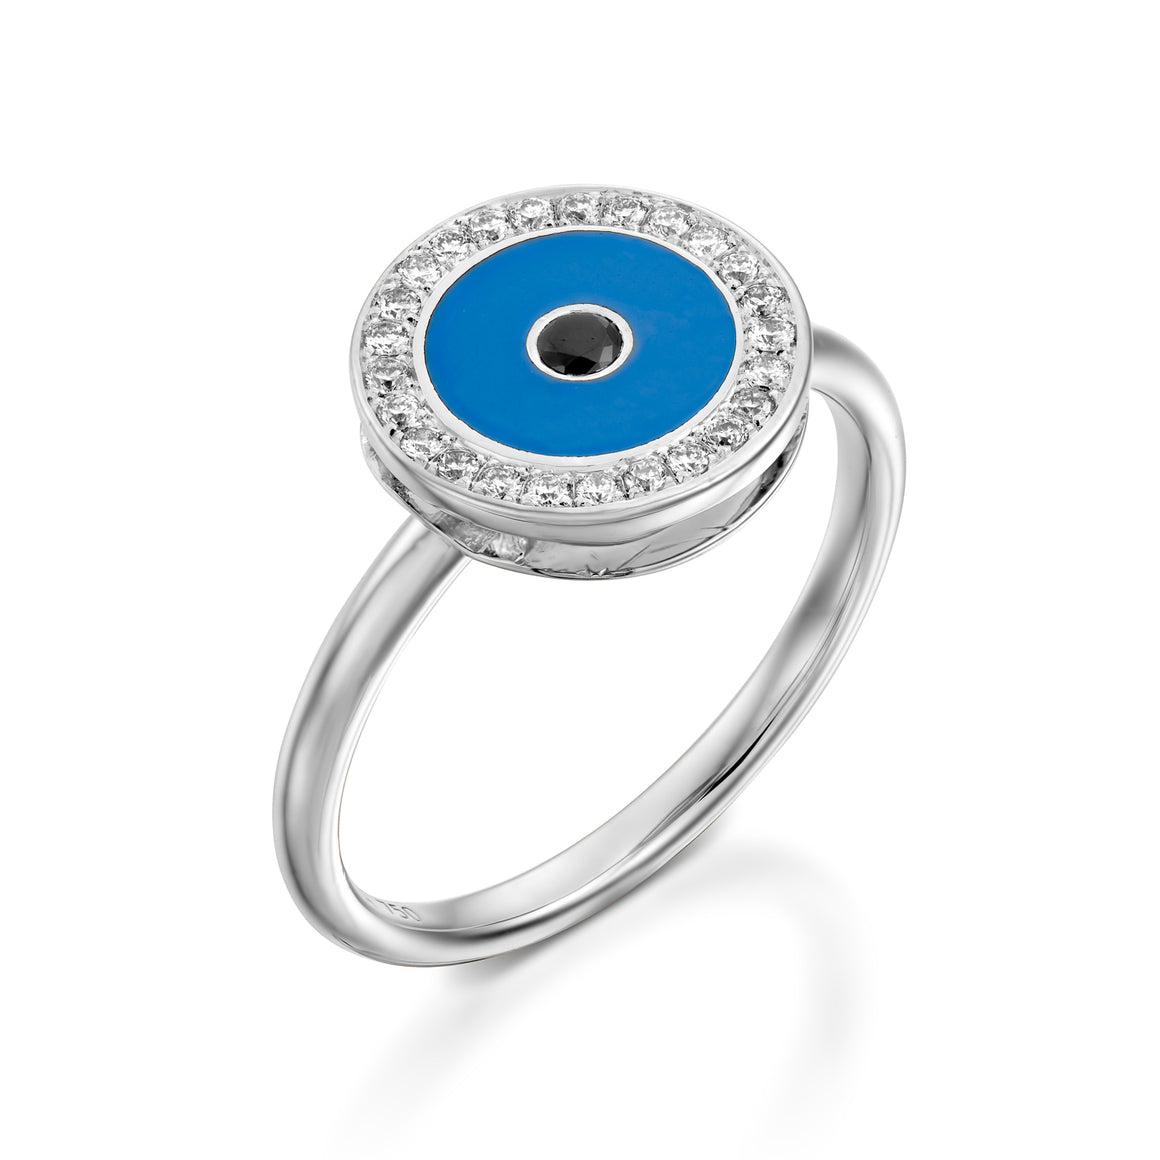 RO9004-18k white  gold Diamond Evil eye ring